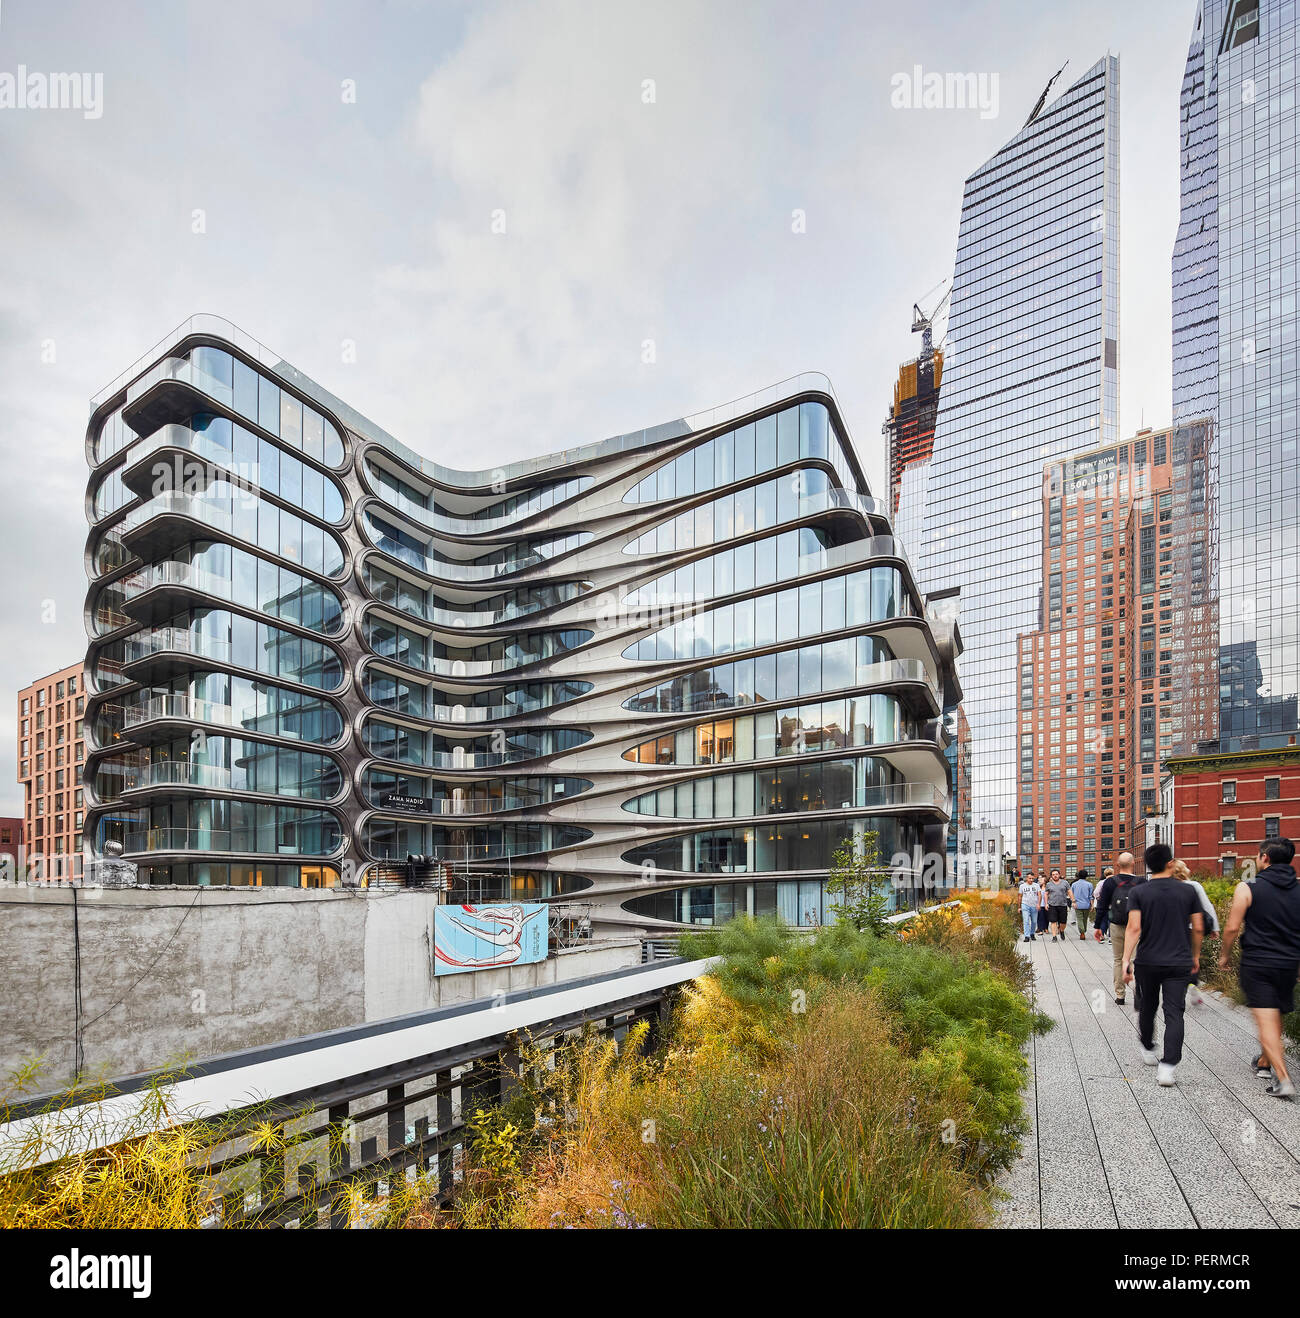 Façade extérieure avec vue sur la ligne haute. 520 West 28th Street, New York, United States. Architecte : Zaha Hadid Architects, 2017. Banque D'Images